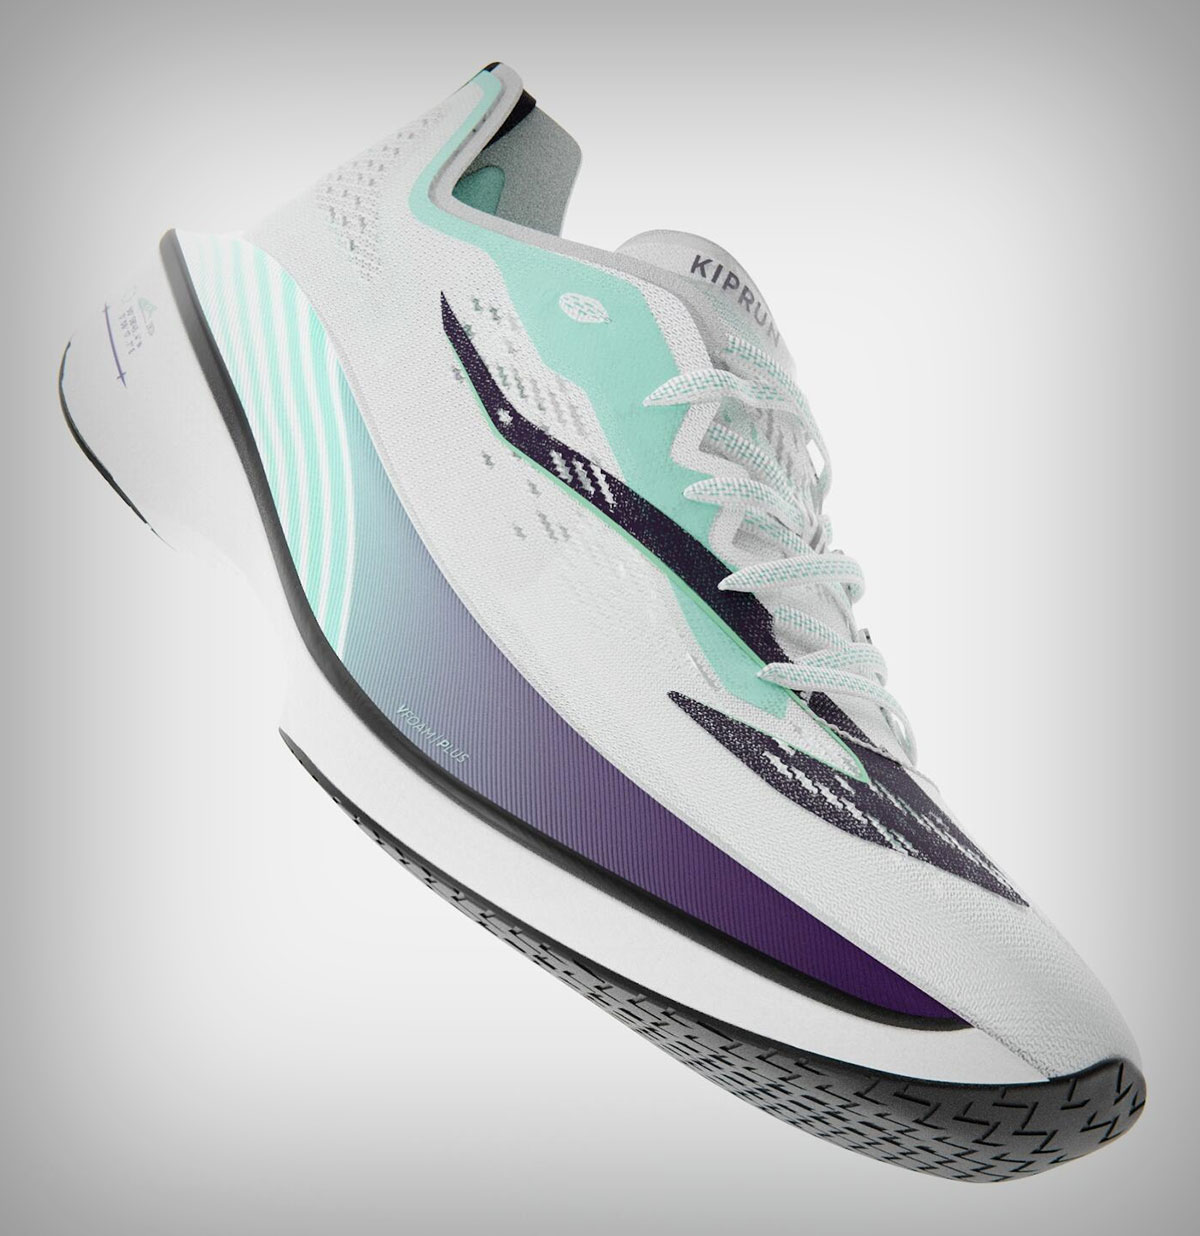 Kiprun KD900X LD, las nuevas zapatillas con placa de carbono de Decathlon para corredores y triatletas